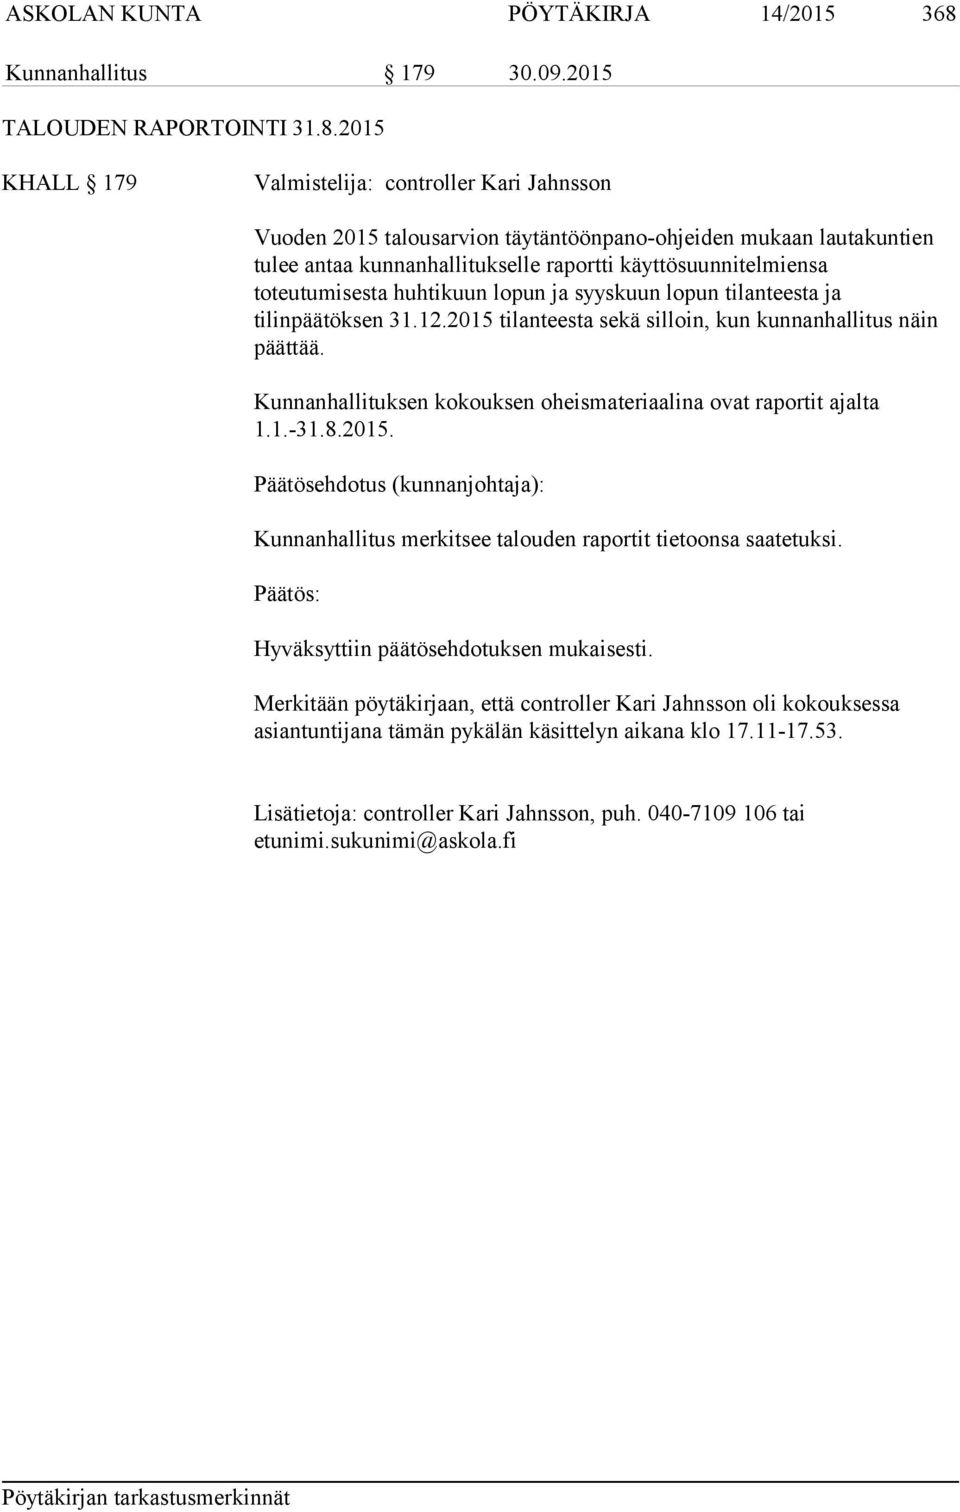 2015 KHALL 179 Valmistelija: controller Kari Jahnsson Vuoden 2015 talousarvion täytäntöönpano-ohjeiden mukaan lautakuntien tulee antaa kunnanhallitukselle raportti käyttösuunnitelmiensa